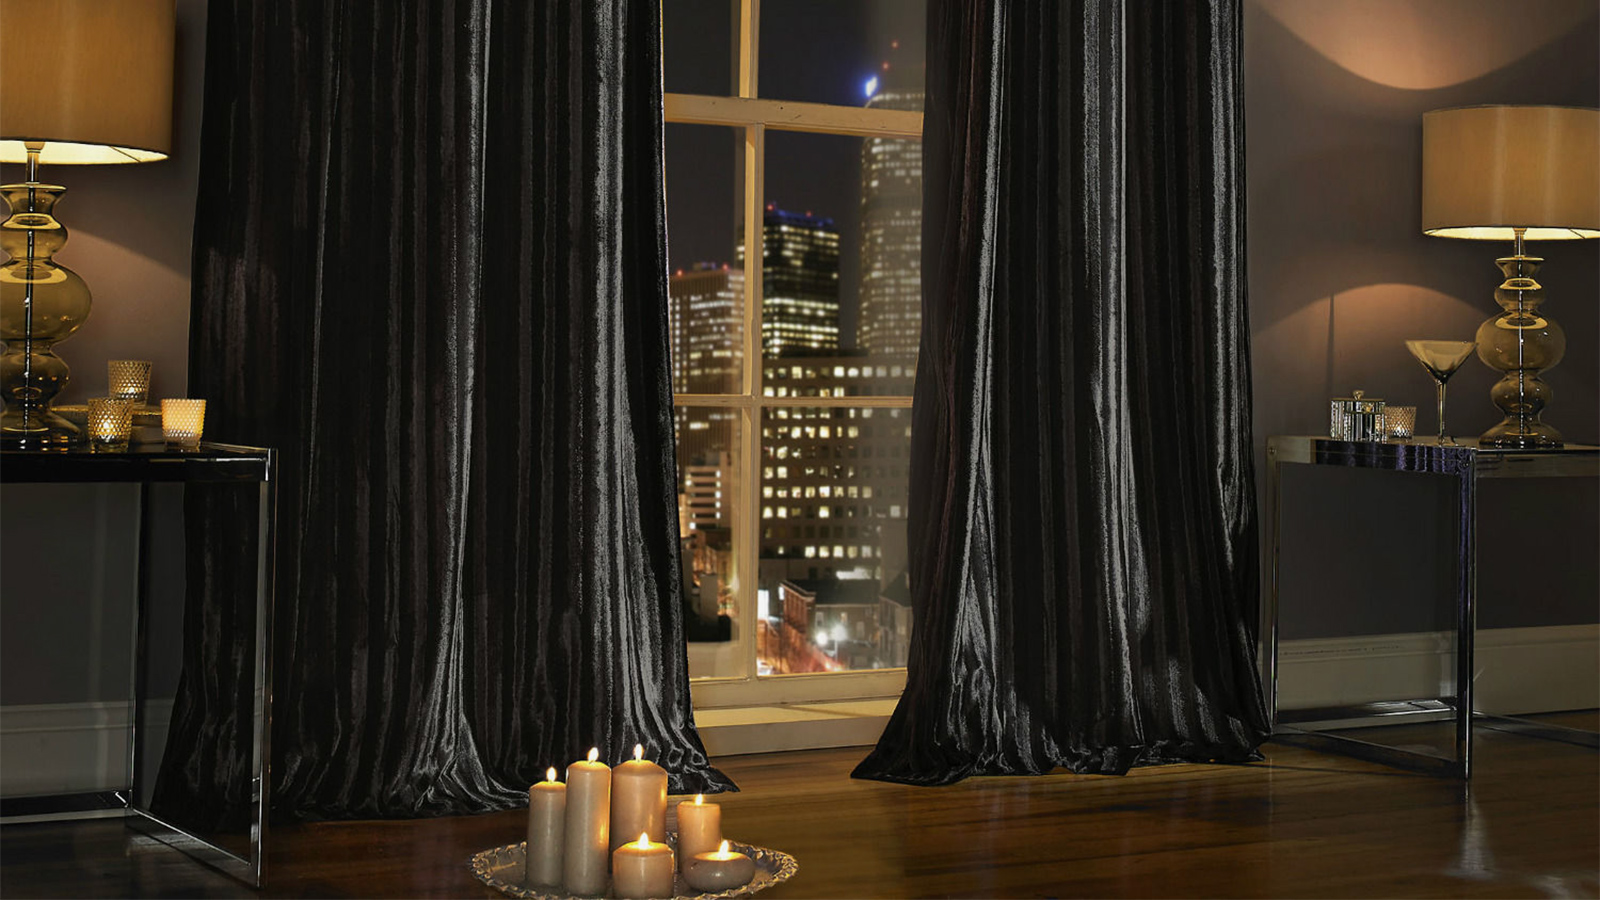 ‪الستائر المخملية هي الأكثر أناقة ورقيا مع الشموع التي تضفي أجواء حميمية دافئة على المنزل‬ (بيكسابي)